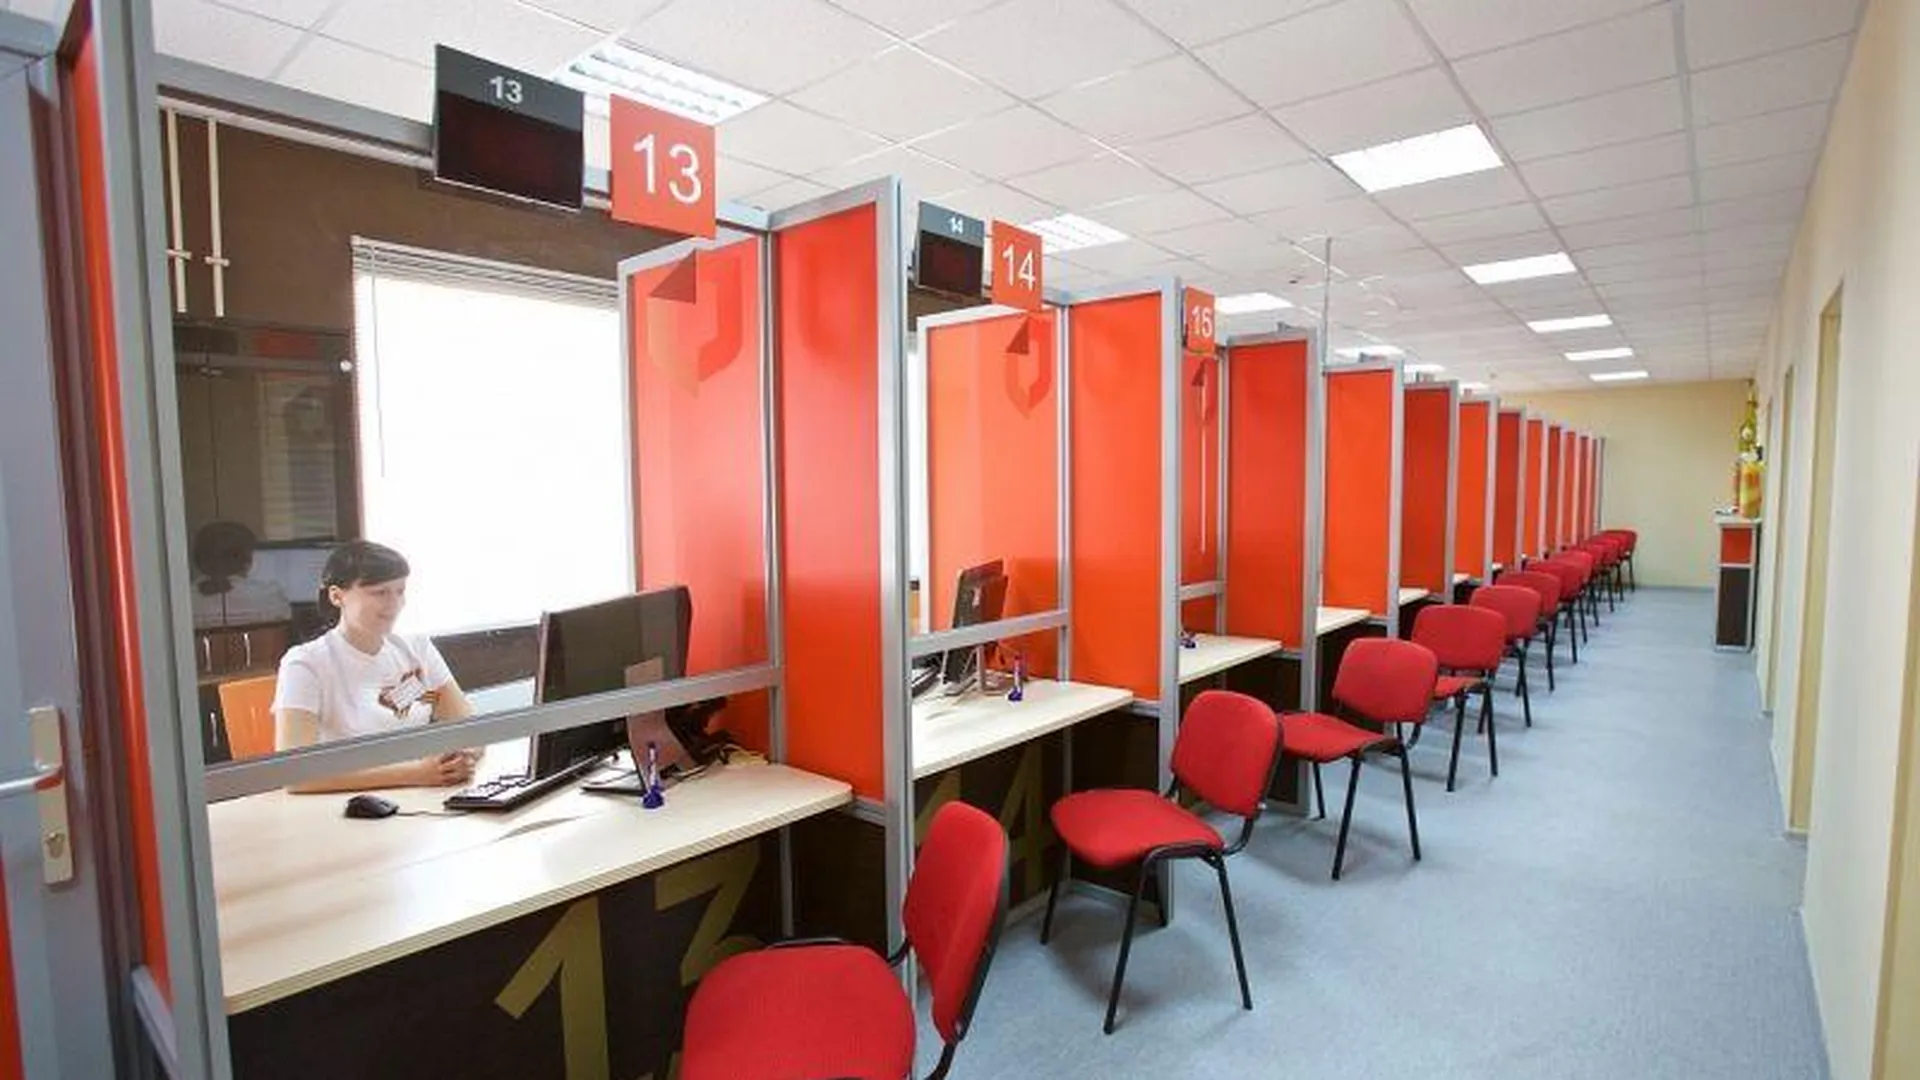 Консультационные центры БТИ открылись в 14 МФЦ в Подмосковье